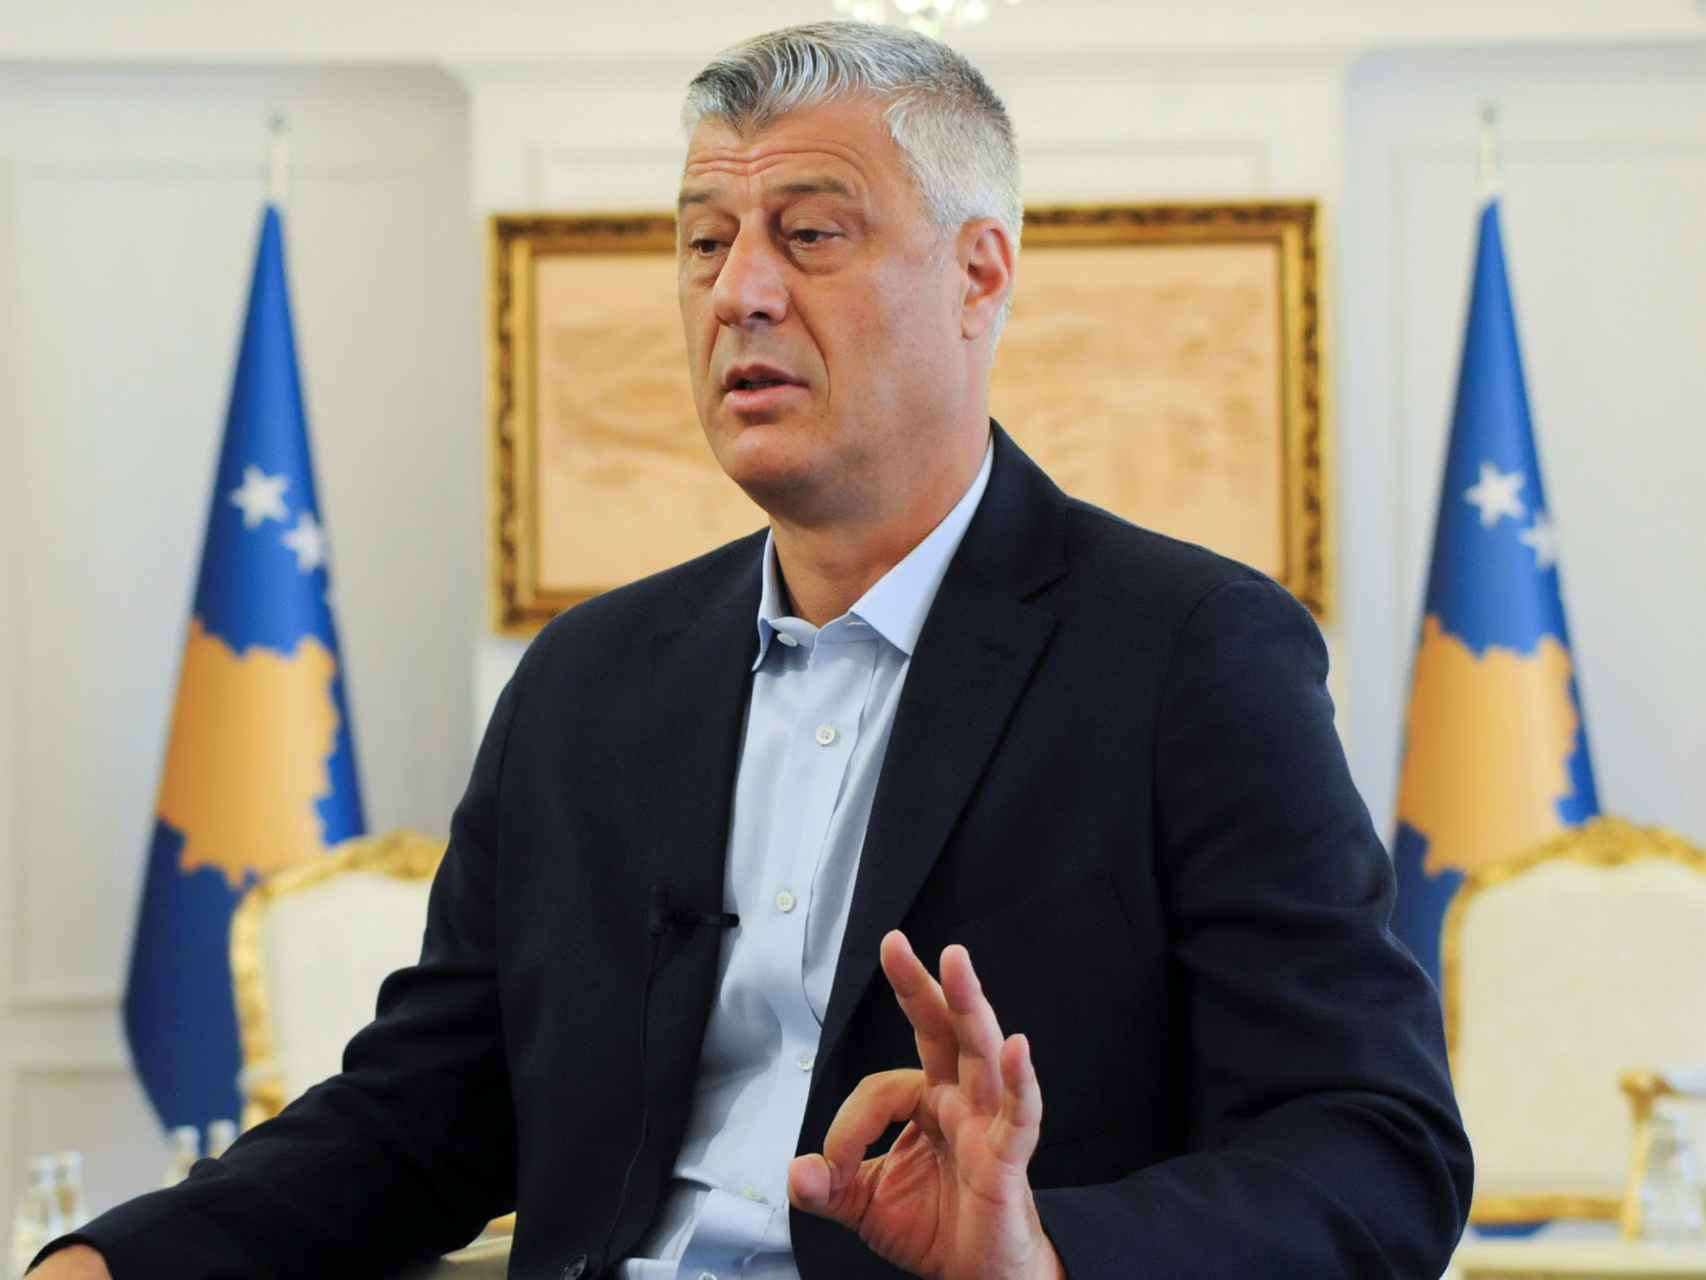 El presidente de Kosovo, Hashim Thaçi, apoya una corrección de la frontera